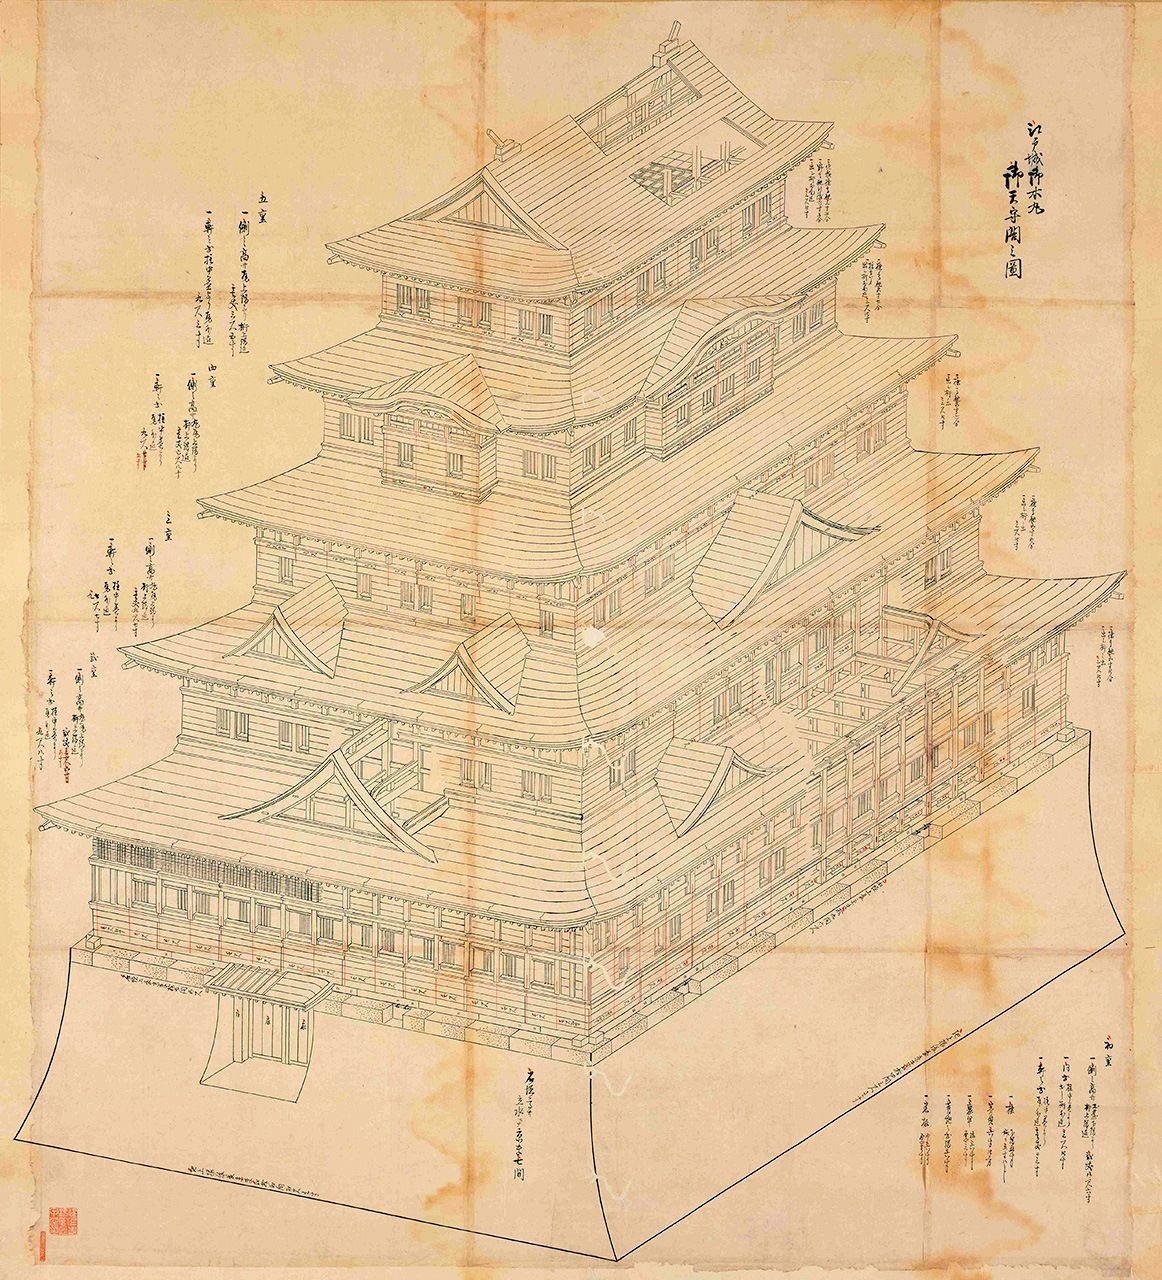 Ce document est un plan structural du tenshu de l’enceinte principale du château d’Edo, bâti en 1638 sous le troisième shôgun, Iemitsu. (Edojô go-honmaru go-tenshukaku tatekata no zu, avec l’aimable autorisation de la salle des collections spéciales de la Bibliothèque centrale métropolitaine de Tokyo)